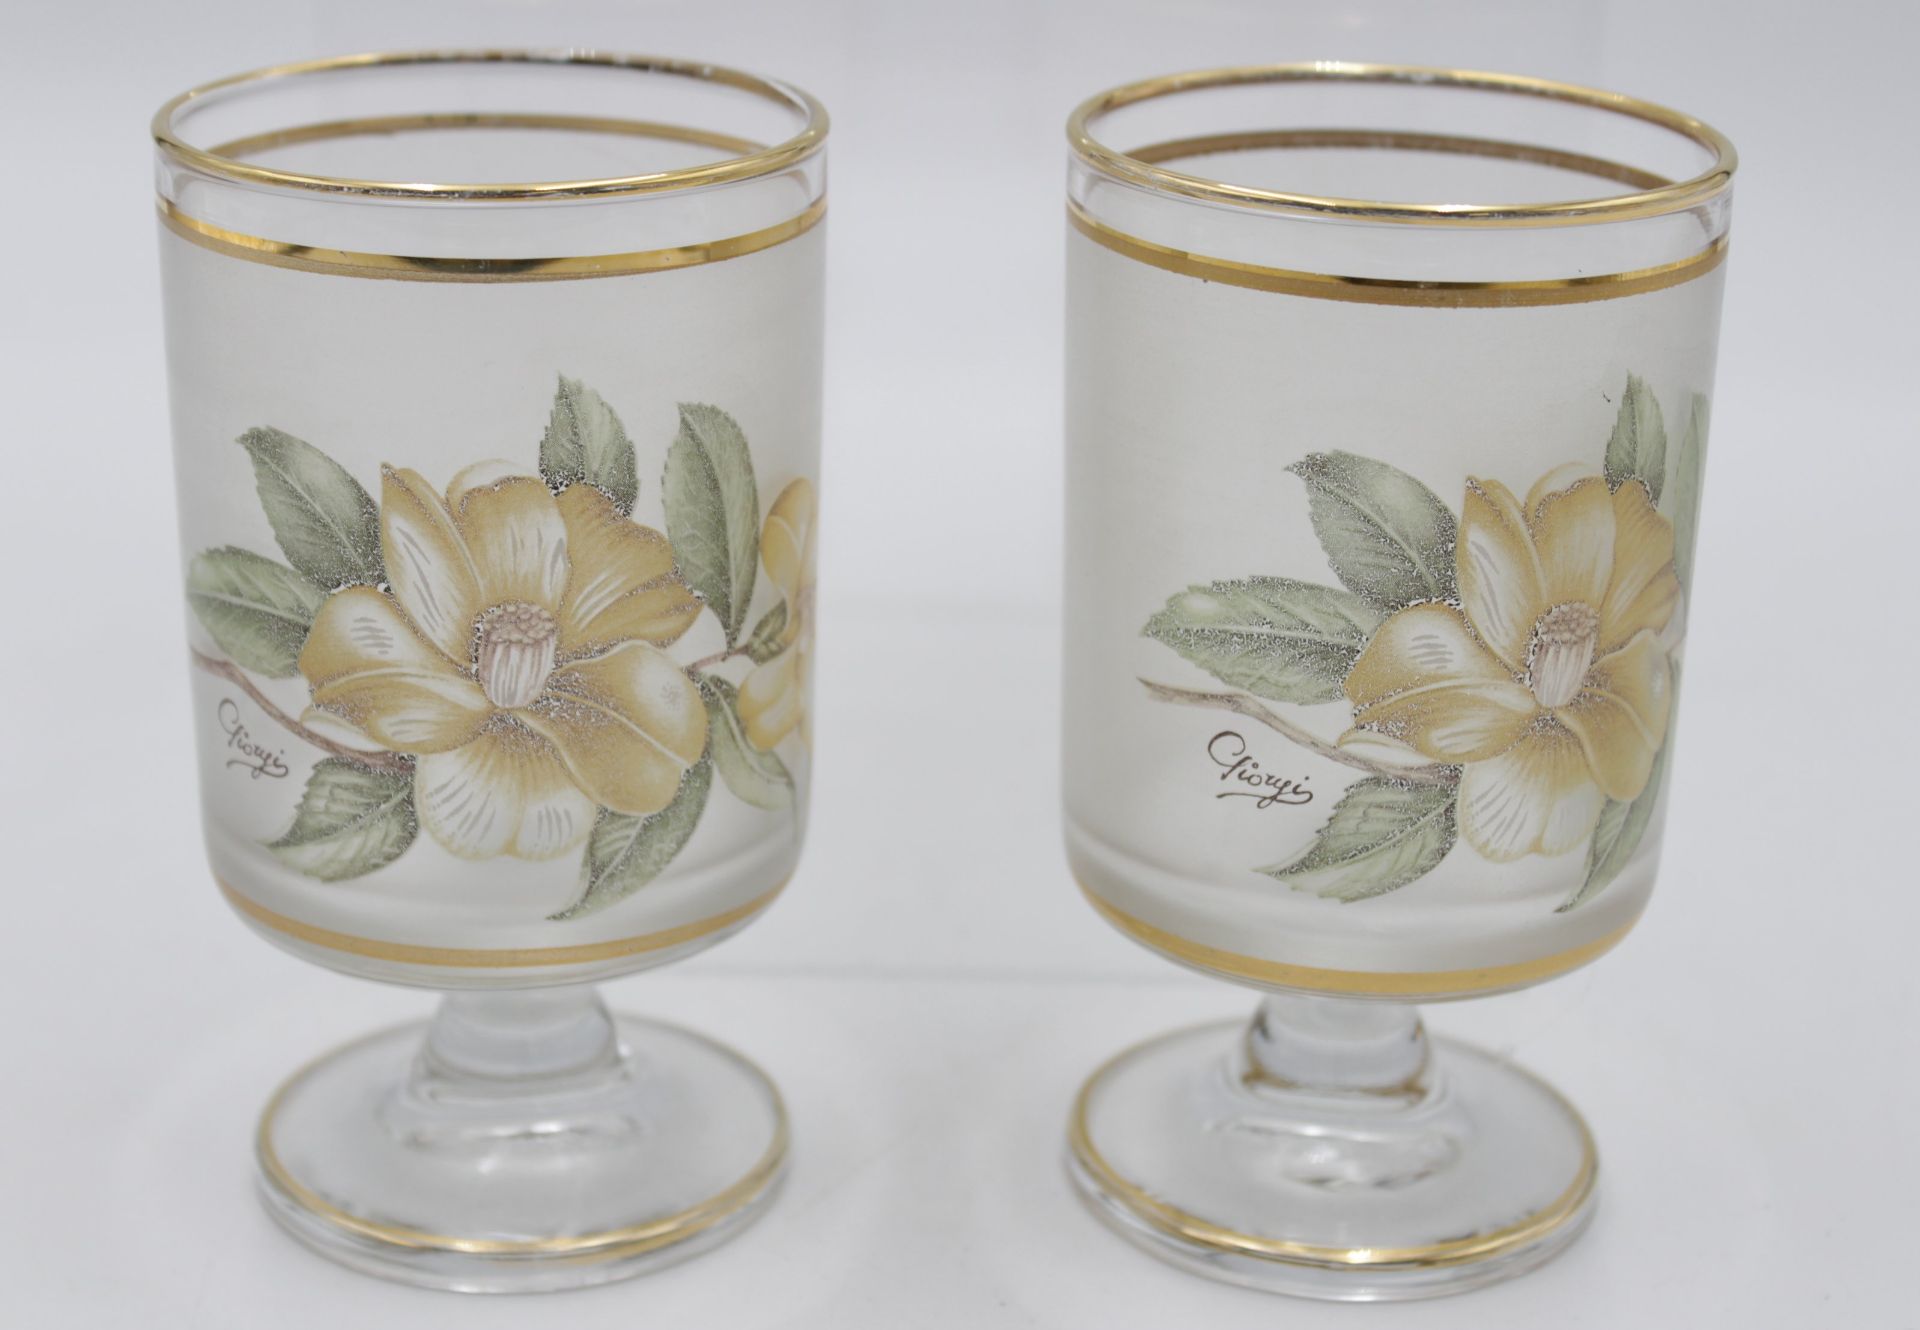 Wasserkrug mit 2 Gläsern, florales Dekor, signiert, Krug H-22cm Gläser H-12,2cm. - Bild 3 aus 4